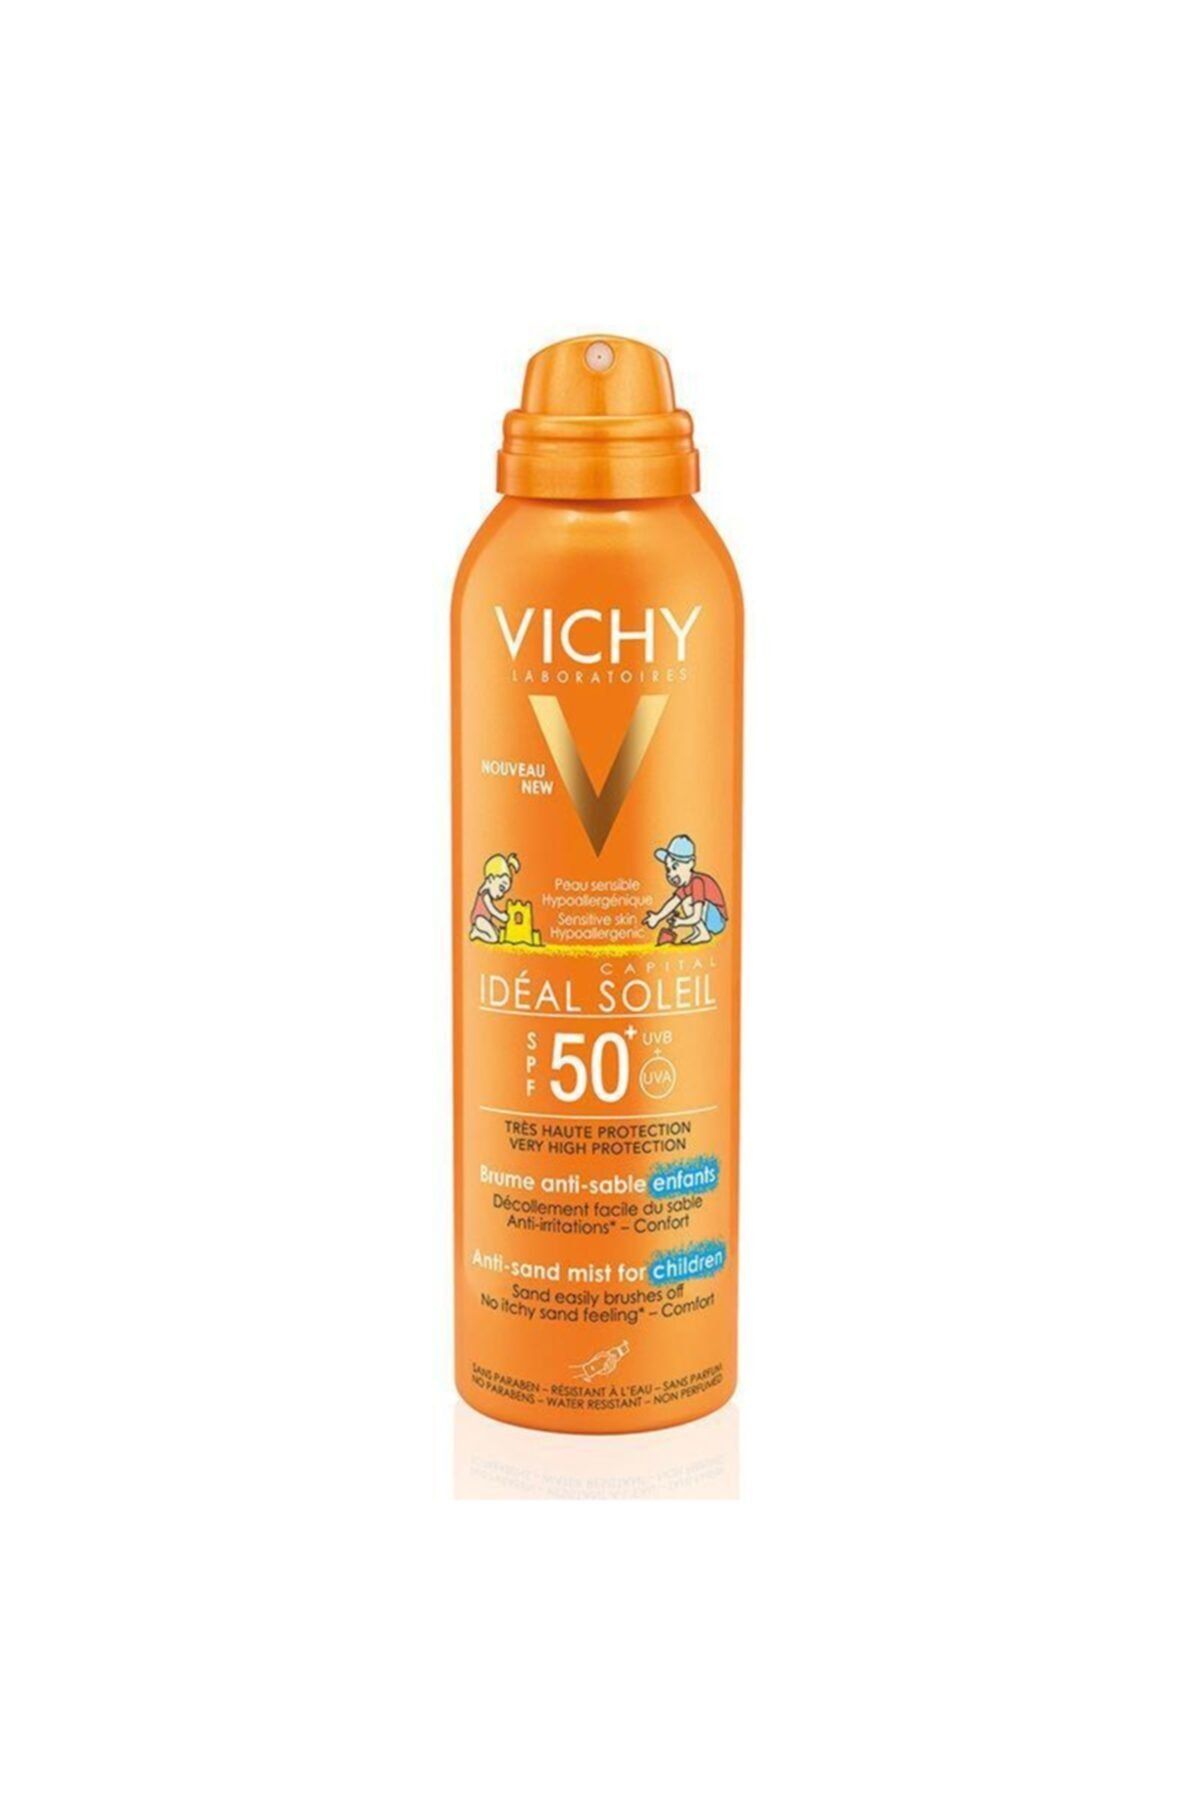 Vichy Ideal Soleil Spf50+ Çocuklar Için Yüksek Korumalı Güneş Spreyi 200 ml